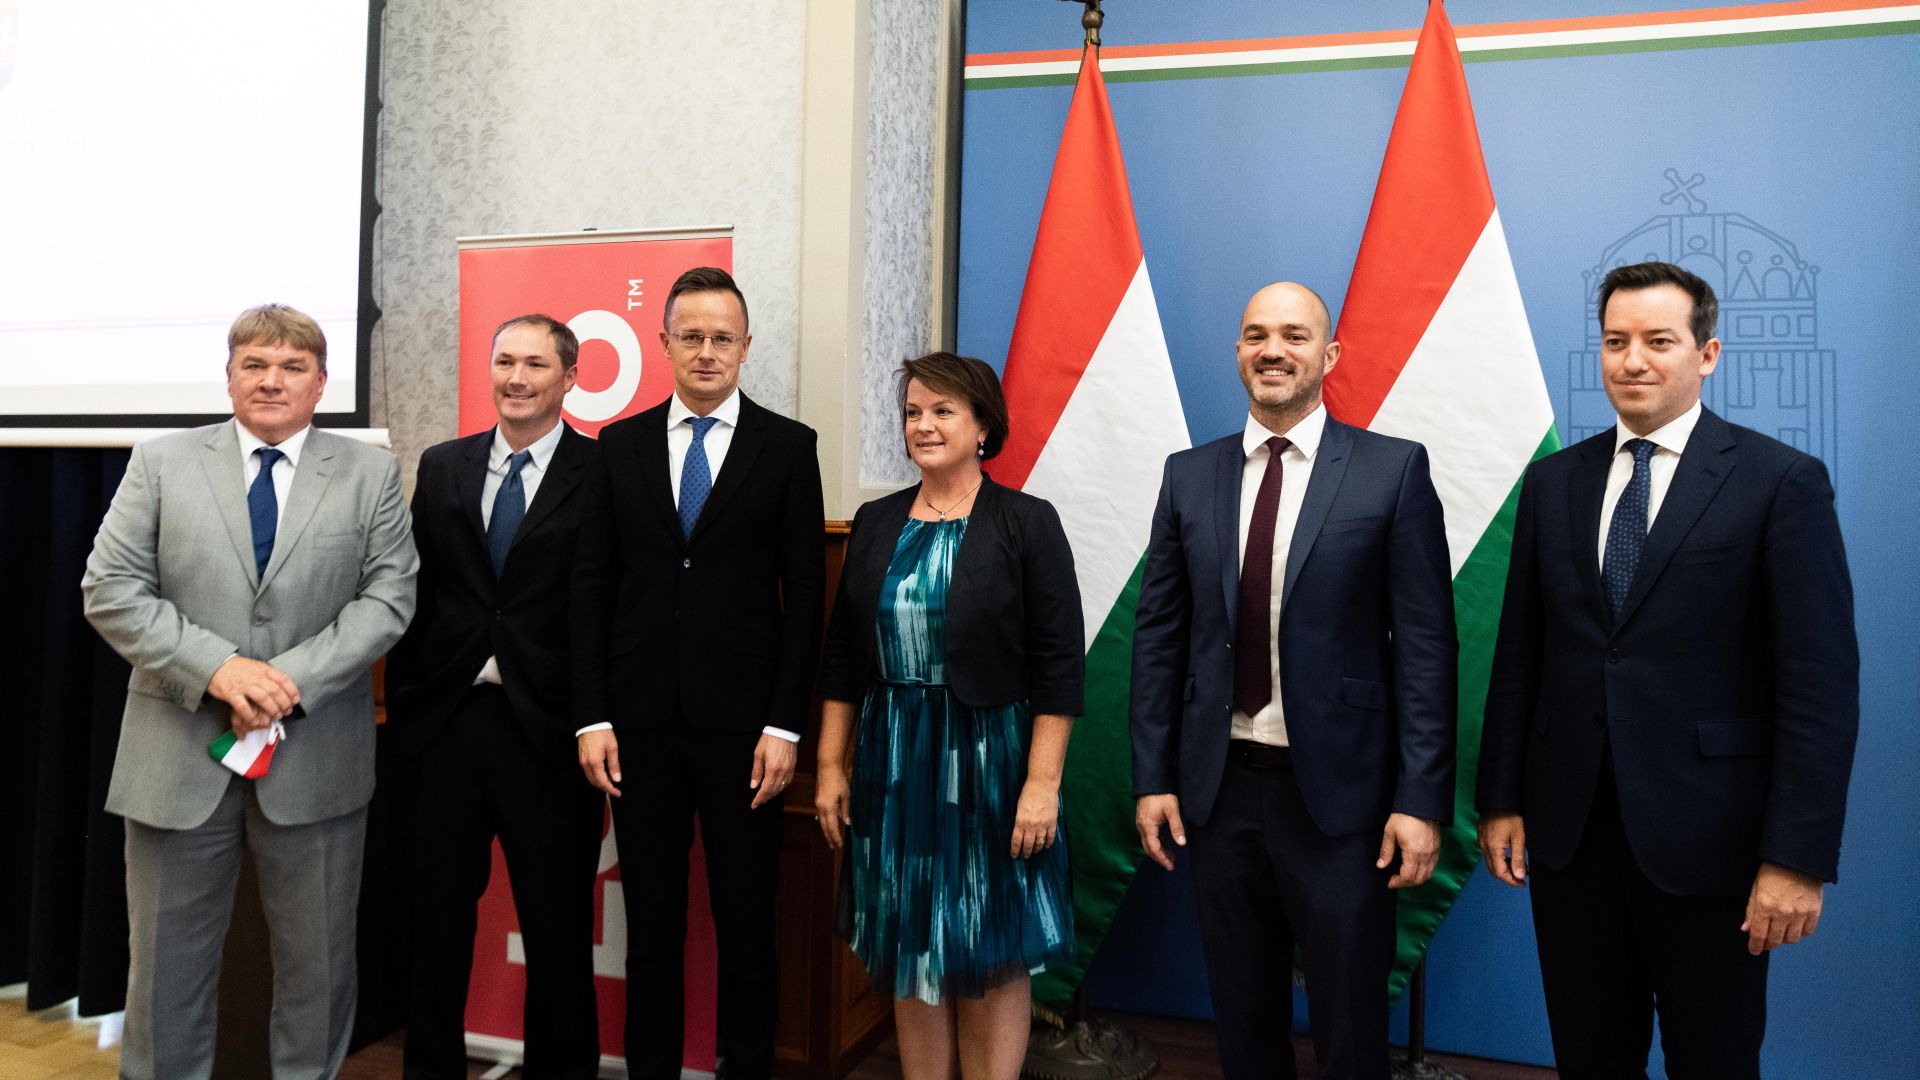 Első saját európai gyártóegységet létesít Magyarországon a Lenovo